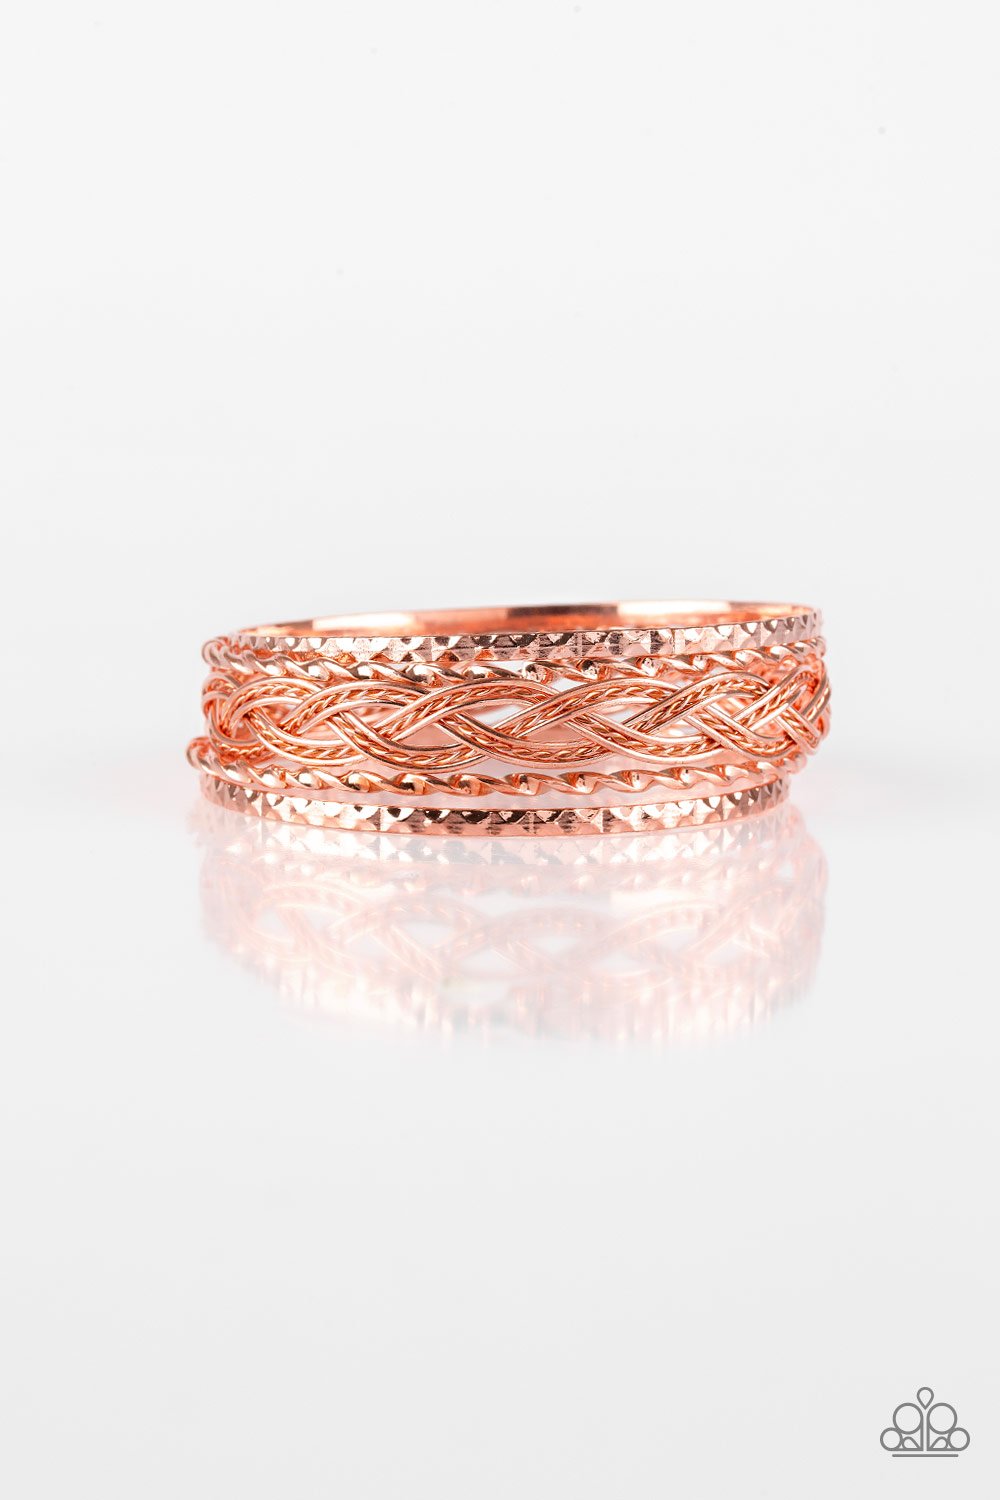 Straight Street - Copper Bracelet